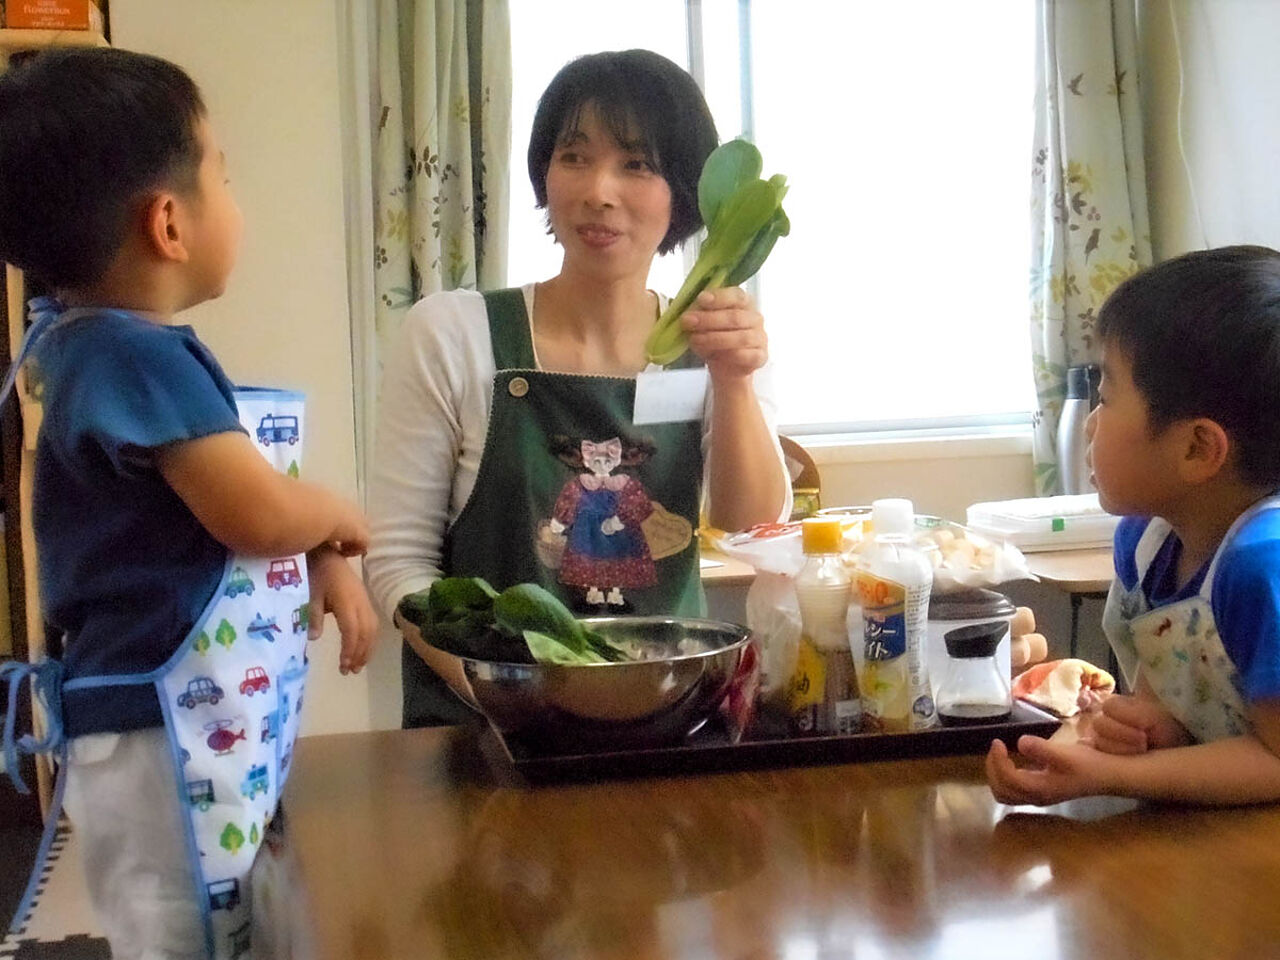 田中さんが子どもたちに野菜を見せながら説明している様子が分かる画像